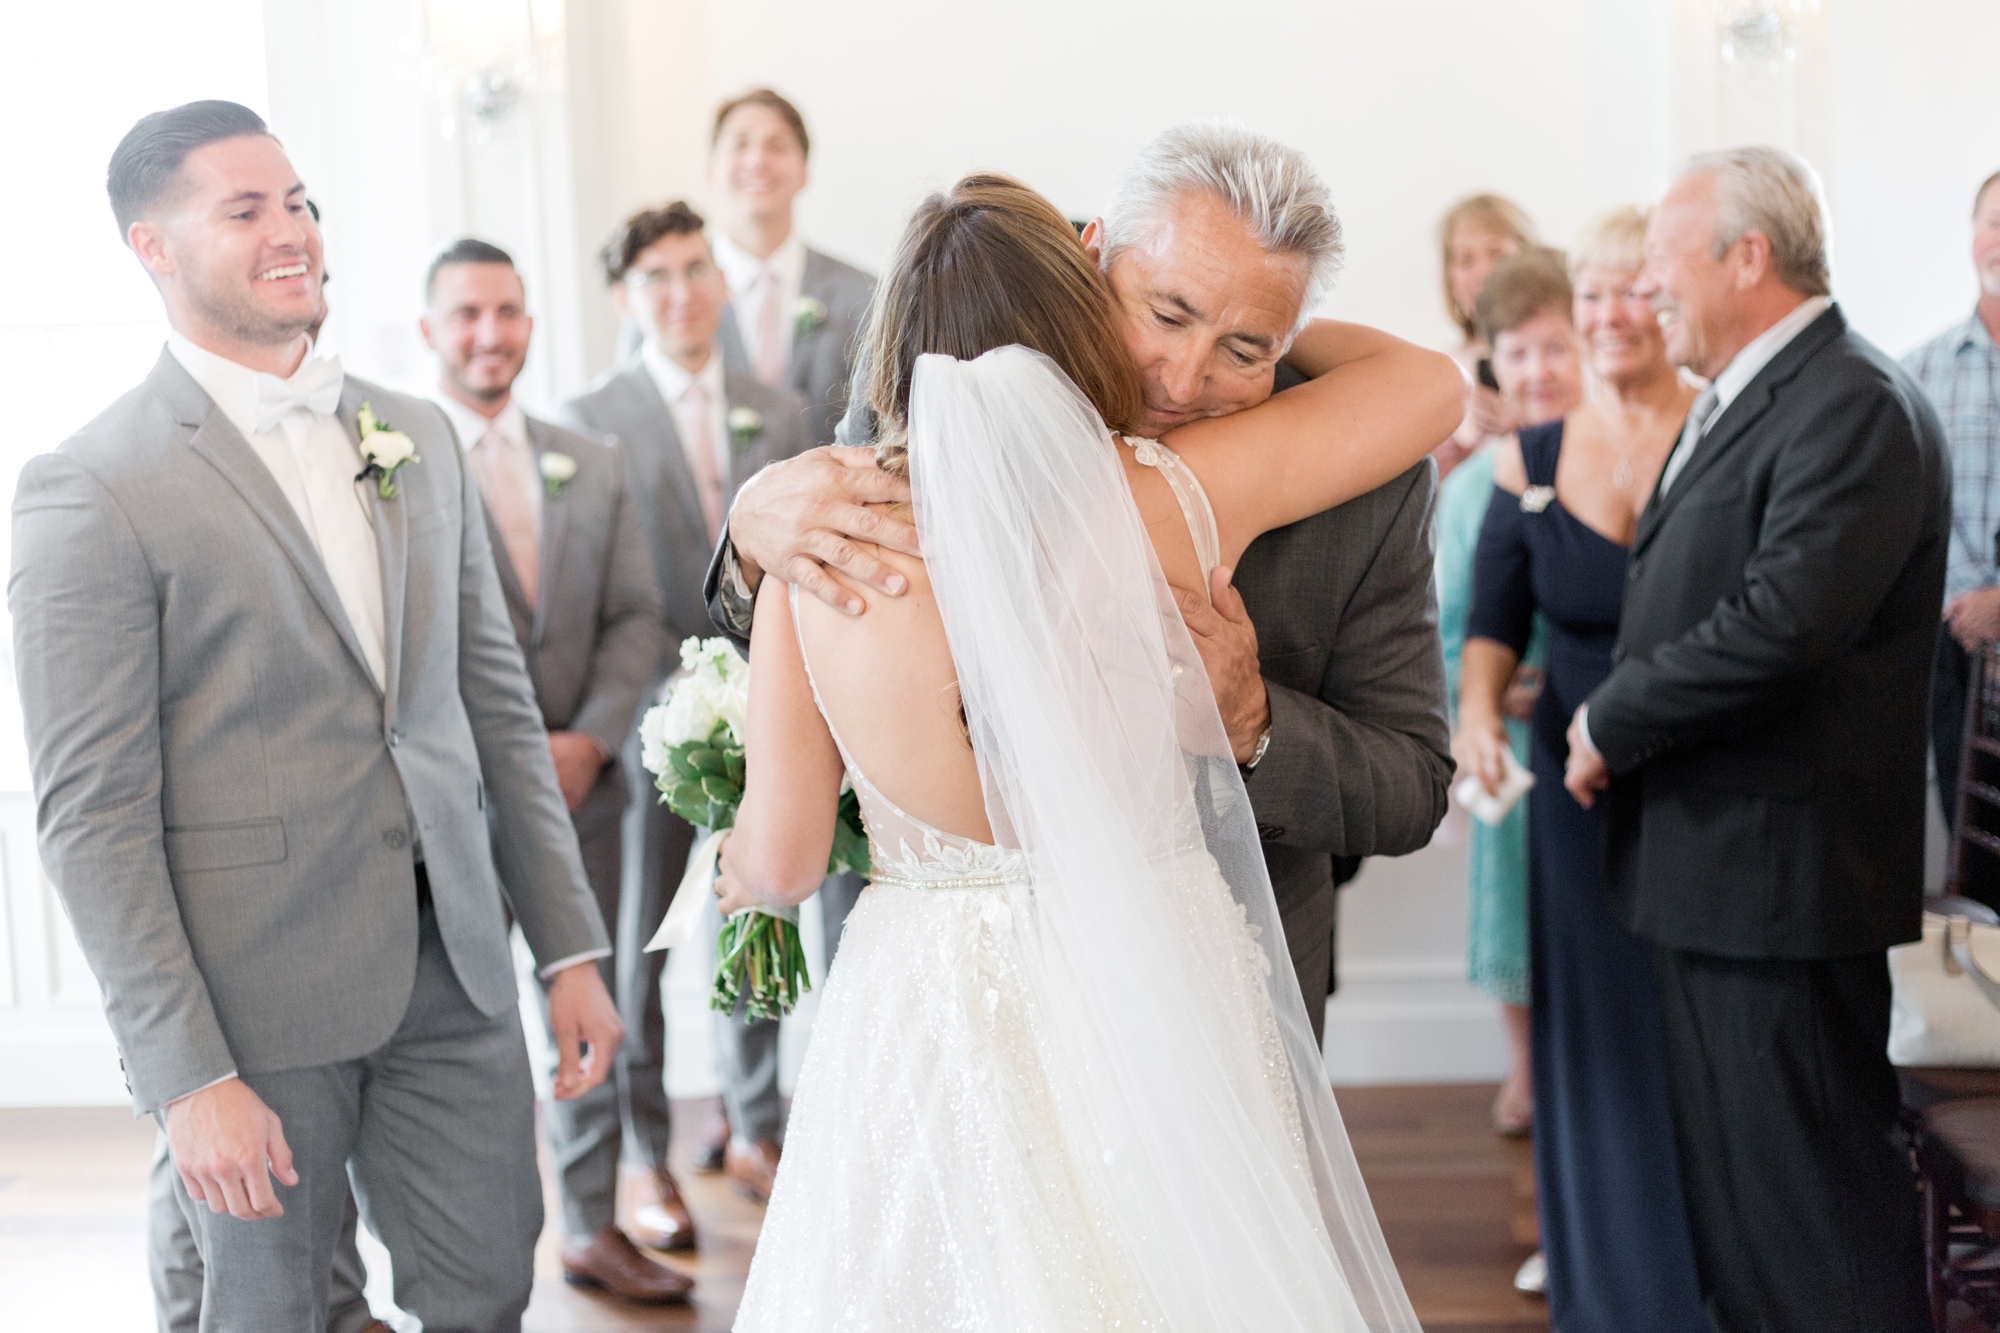 dad gives bride away